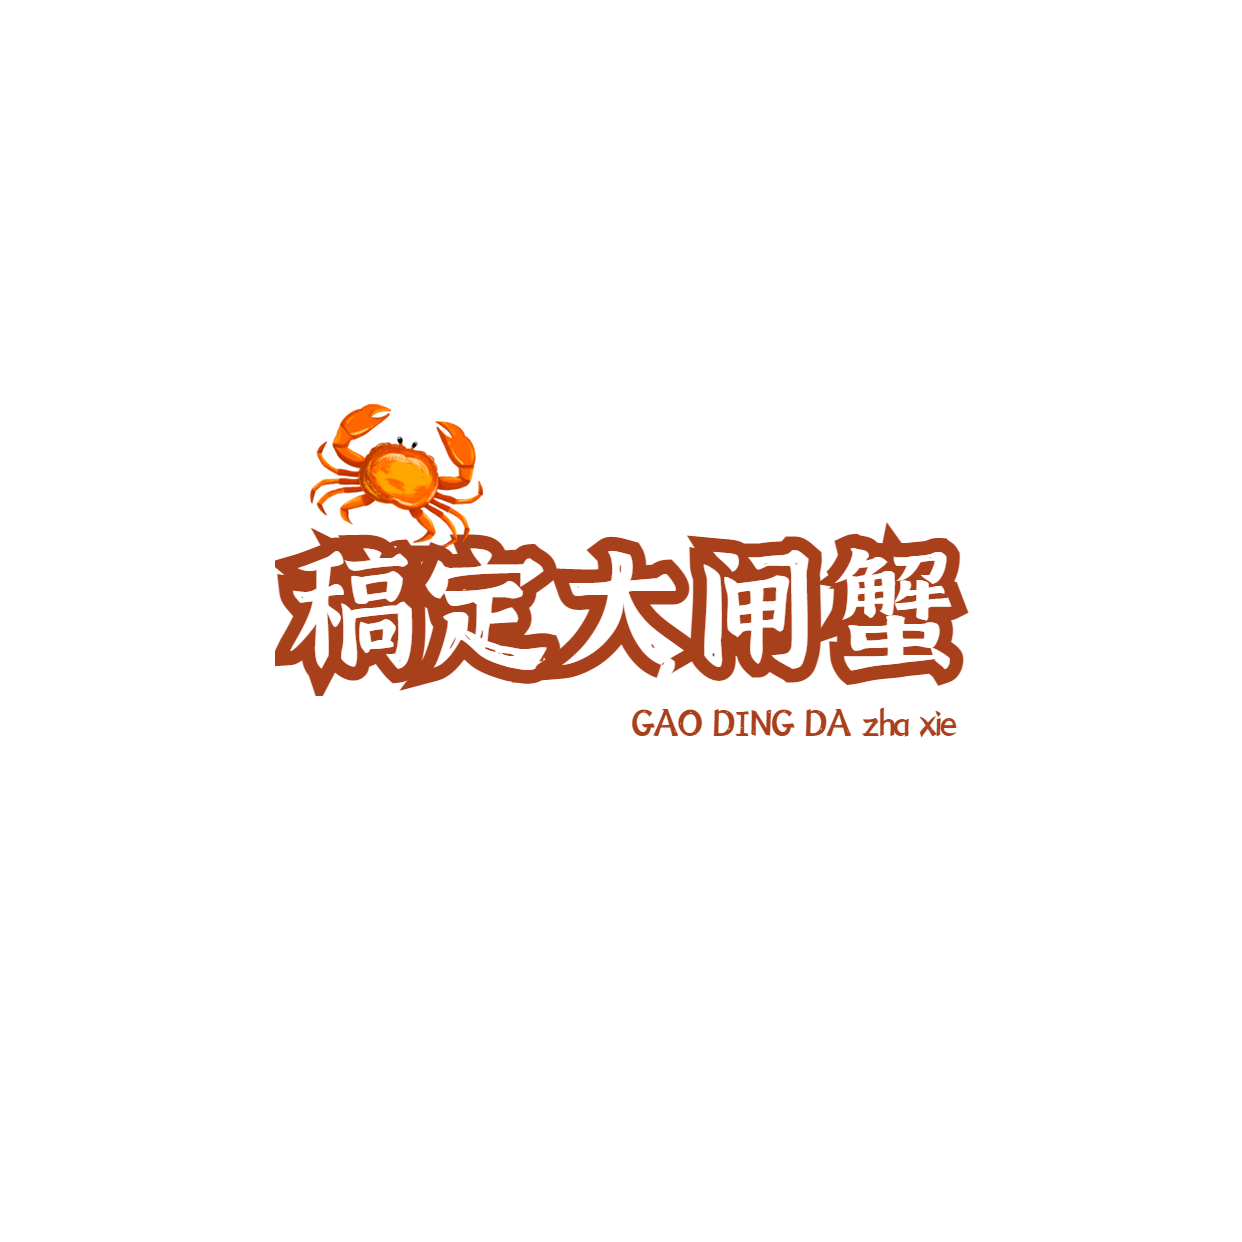 大闸蟹螃蟹海鲜门店logo预览效果